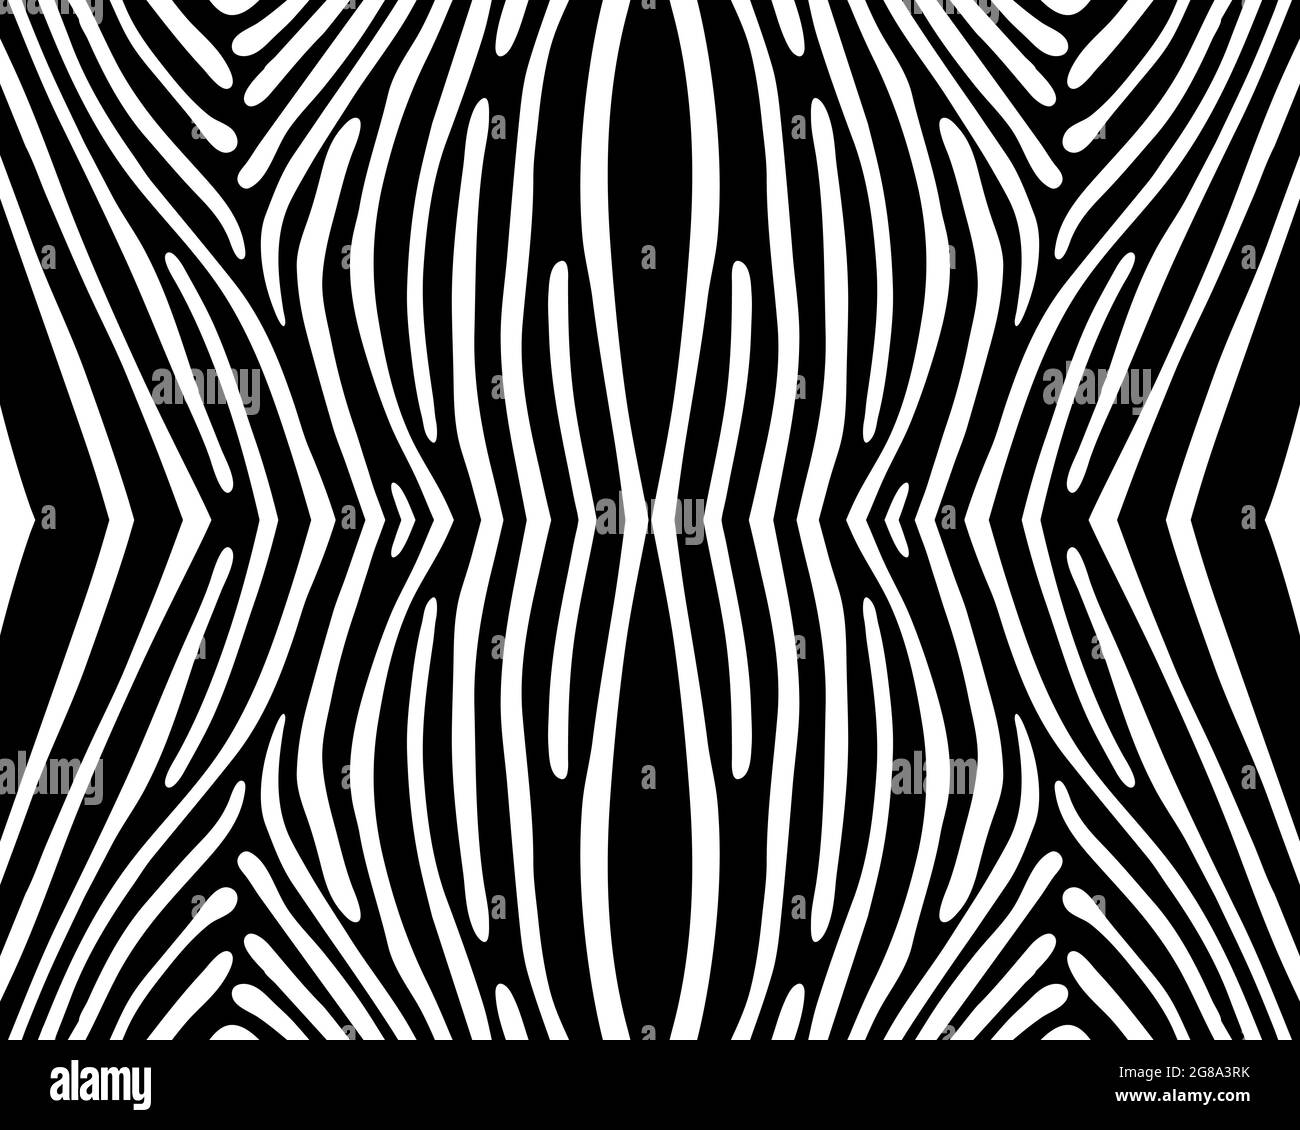 Nahtloses Zebramuster in Schwarz und Weiß auf weißem Hintergrund Stockfoto